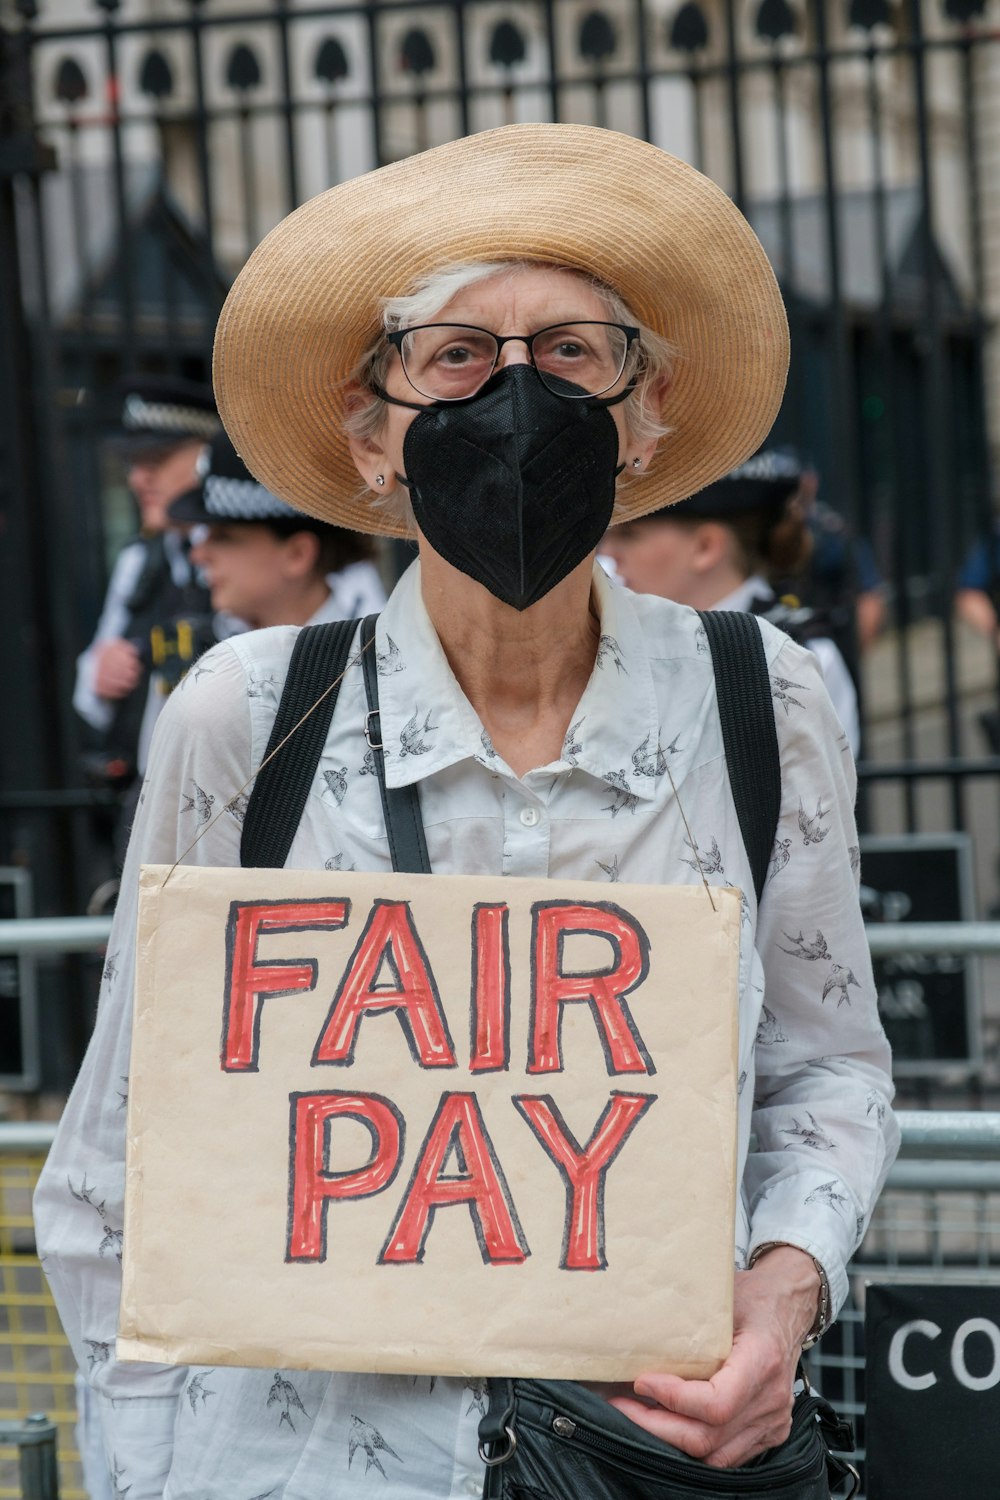 Un homme portant un chapeau et tenant une pancarte